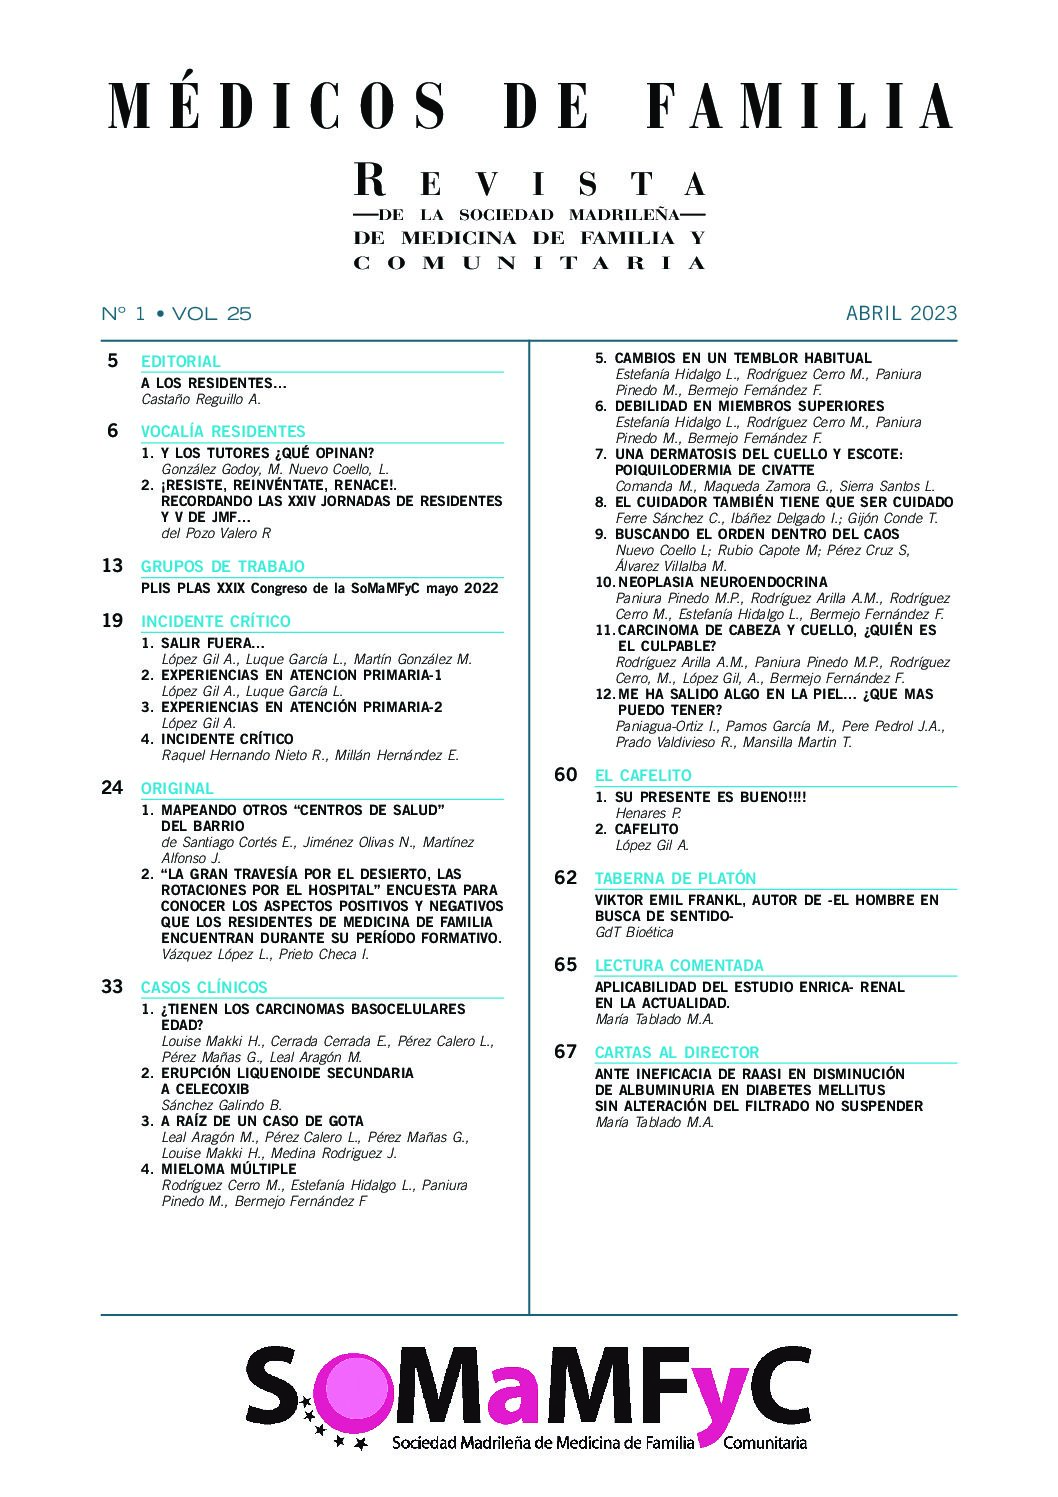 Revista Médicos de Familia vol. 25 nº 1 abril 2023